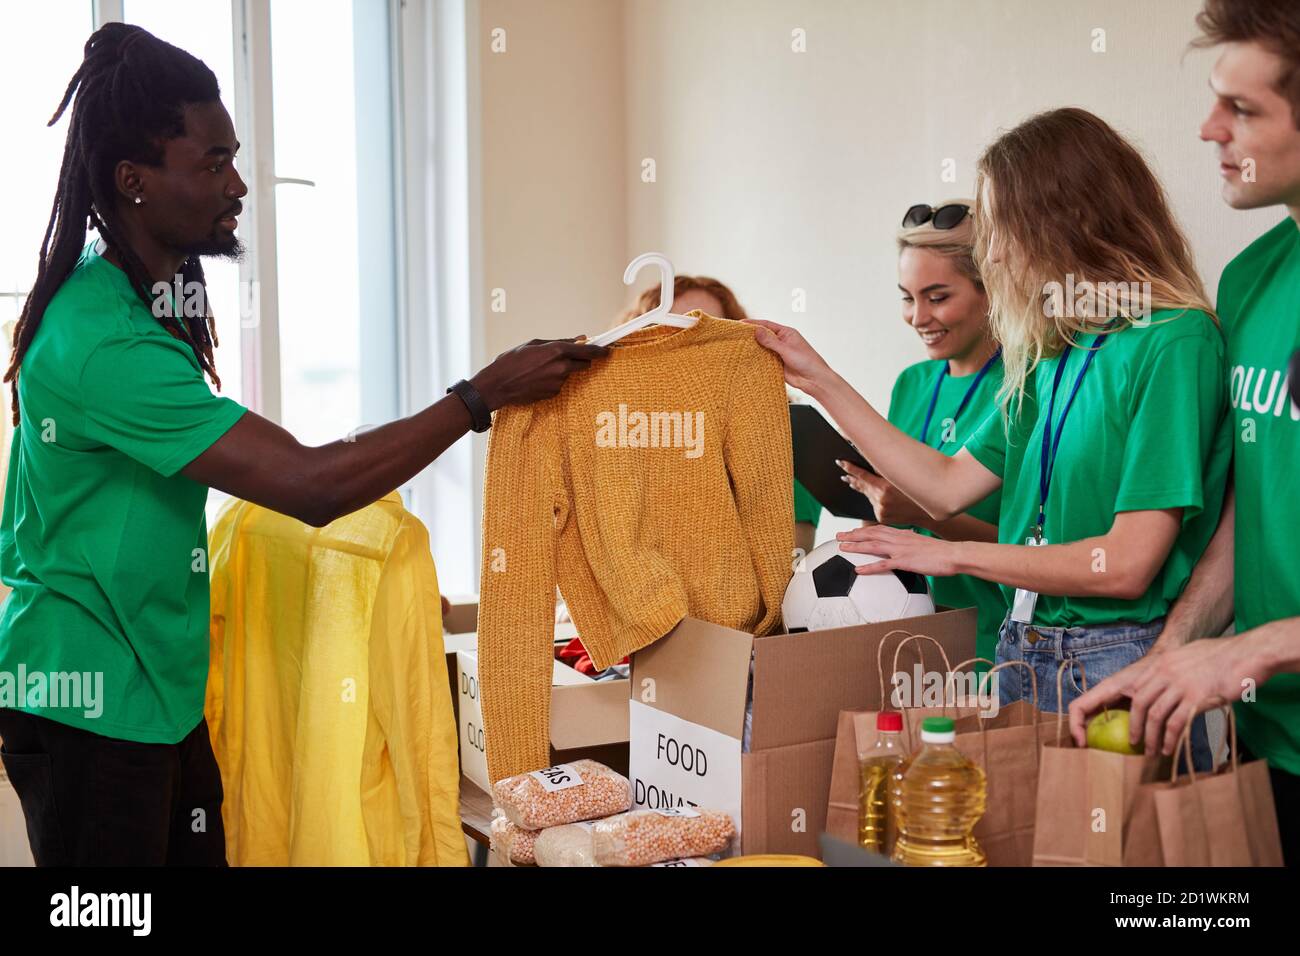 Junge multi-ethnische Gruppe von Menschen für Wohltätigkeitsorganisationen  versammelt, gutherzigen Männer und Frauen in grünen T-Shirt haben Kartons  mit Kleidung und Essen, wollen armen Menschen helfen Stockfotografie - Alamy